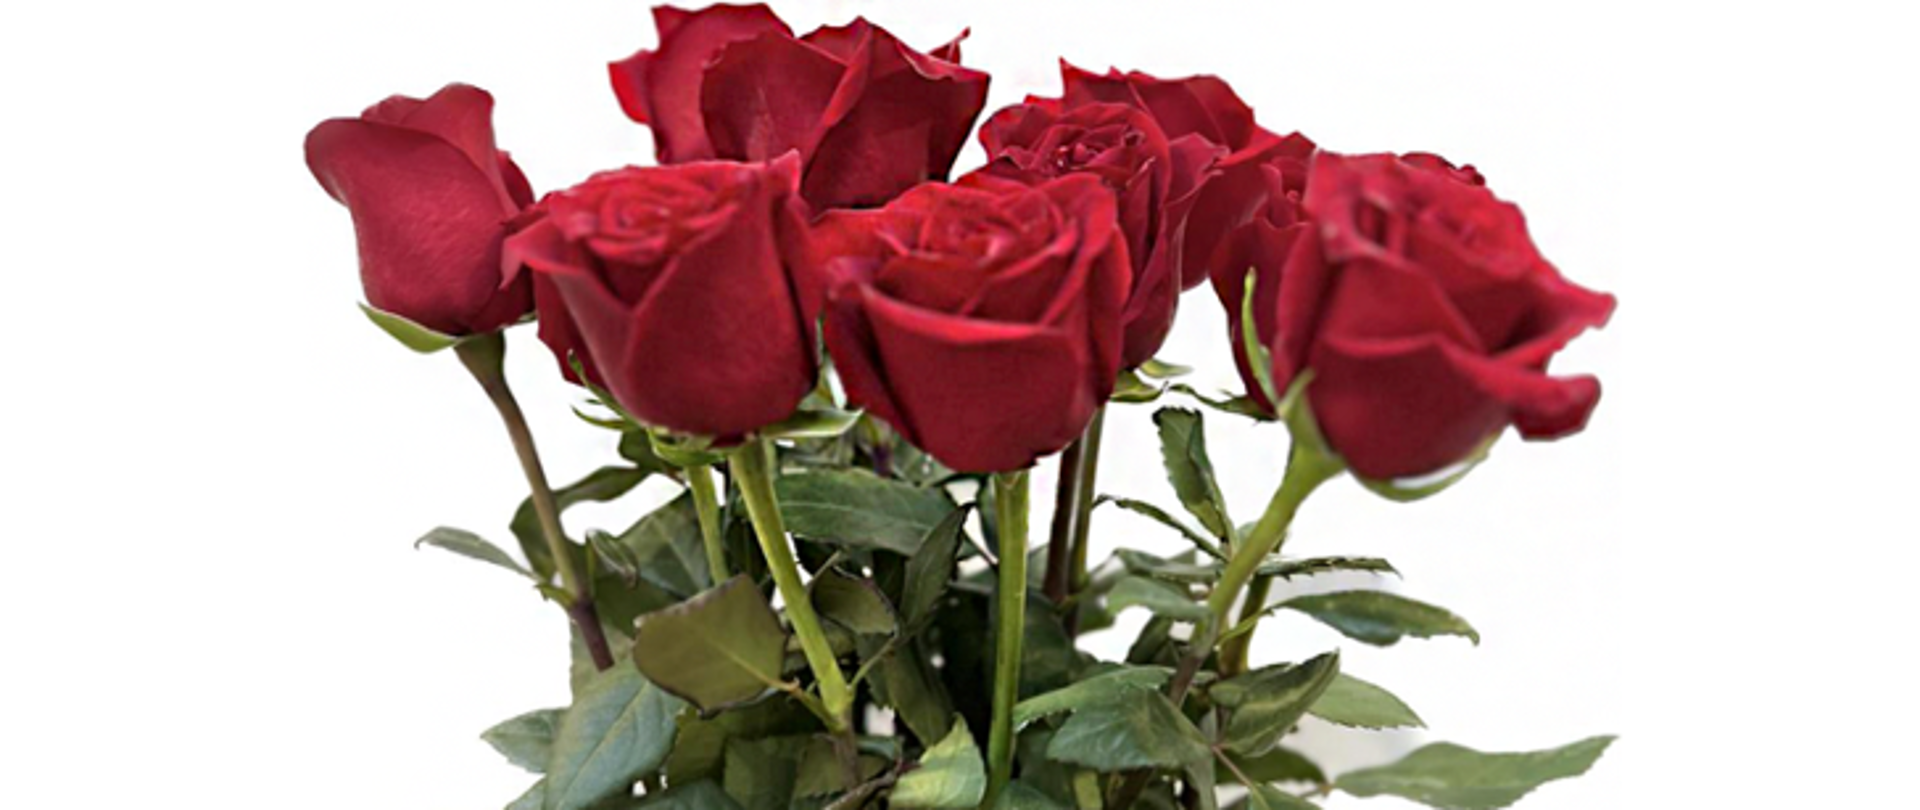 Na ilustracji widoczny bukiet czerwonych róż na białym tle.